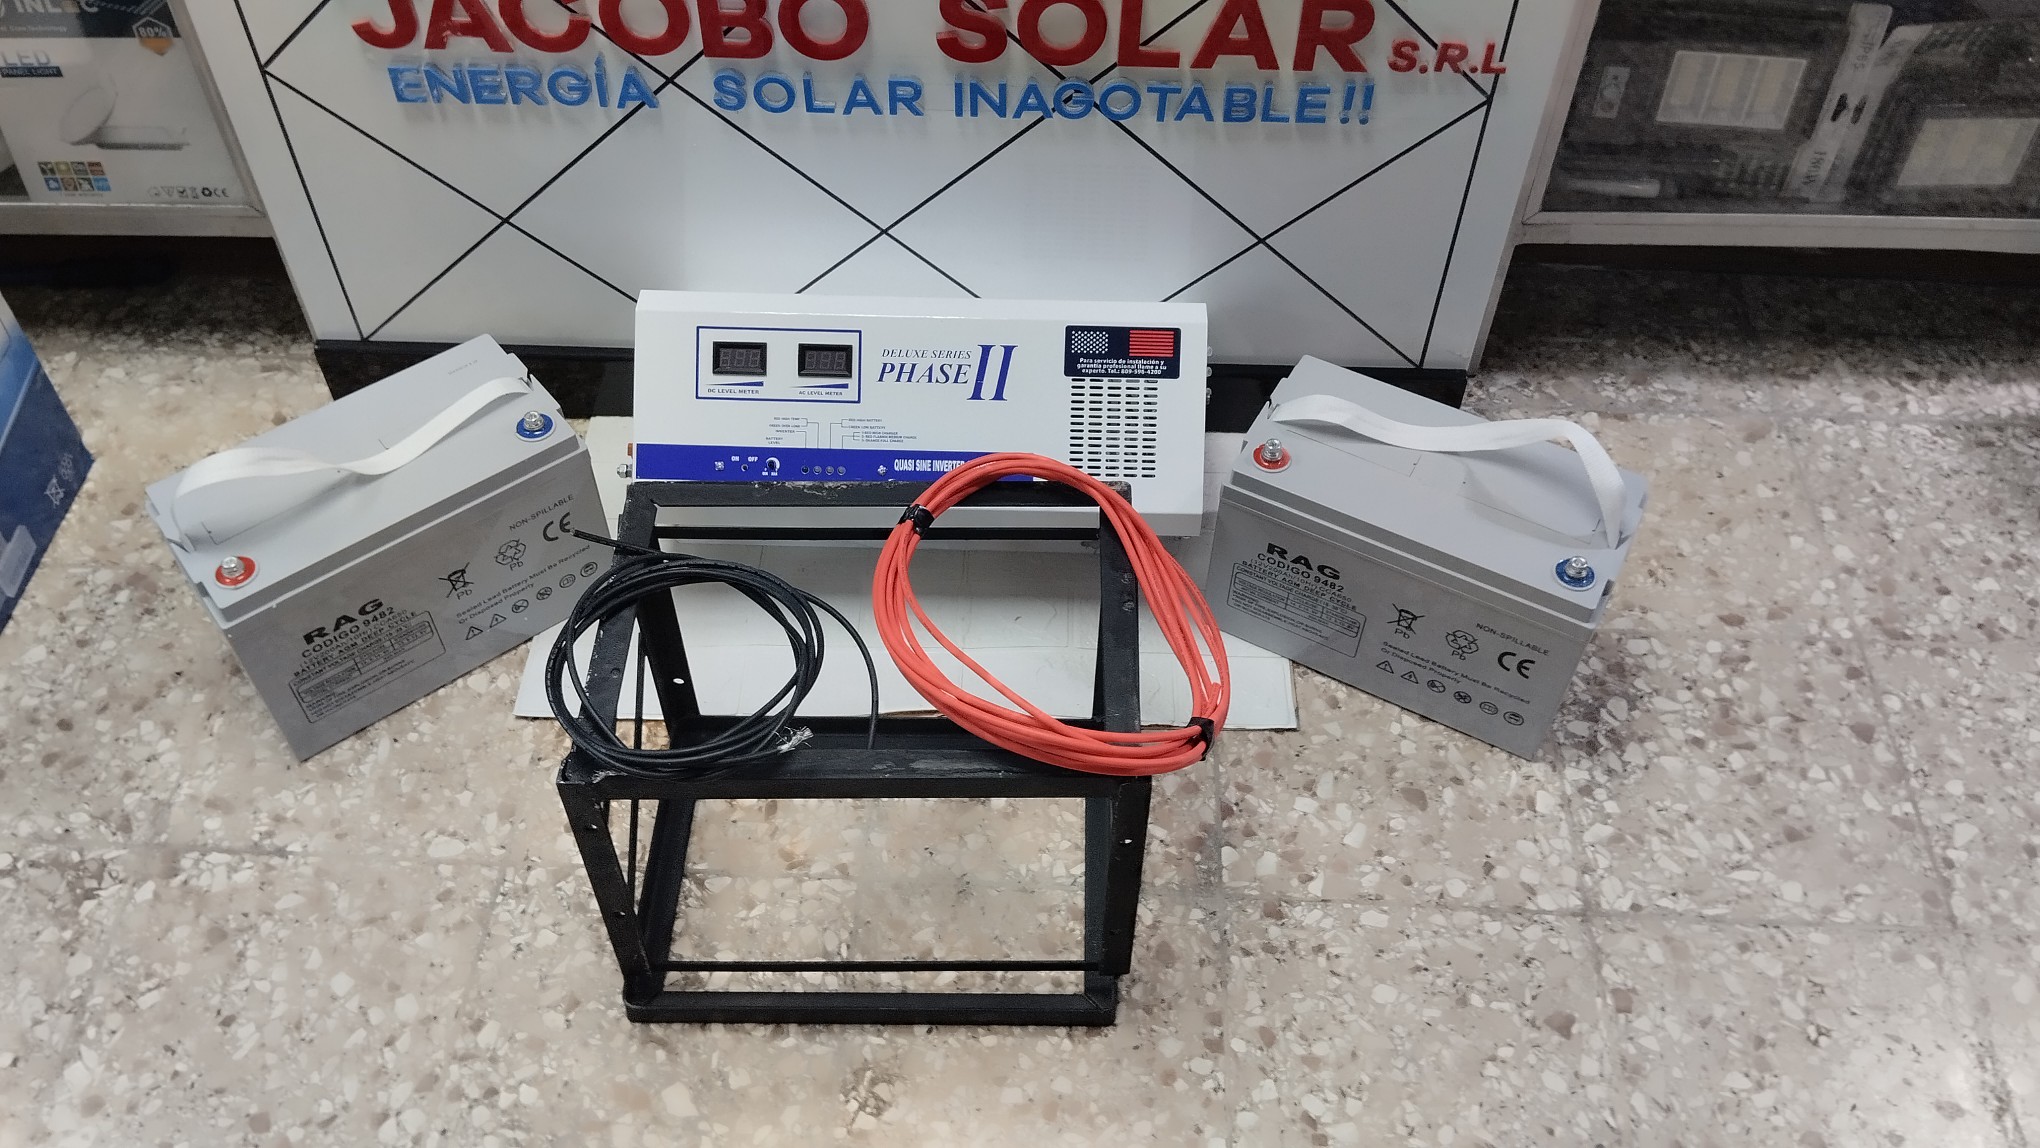 otros electronicos - Jacobo solar está madres con oferta de inversor con sus baterías y sus accesorio